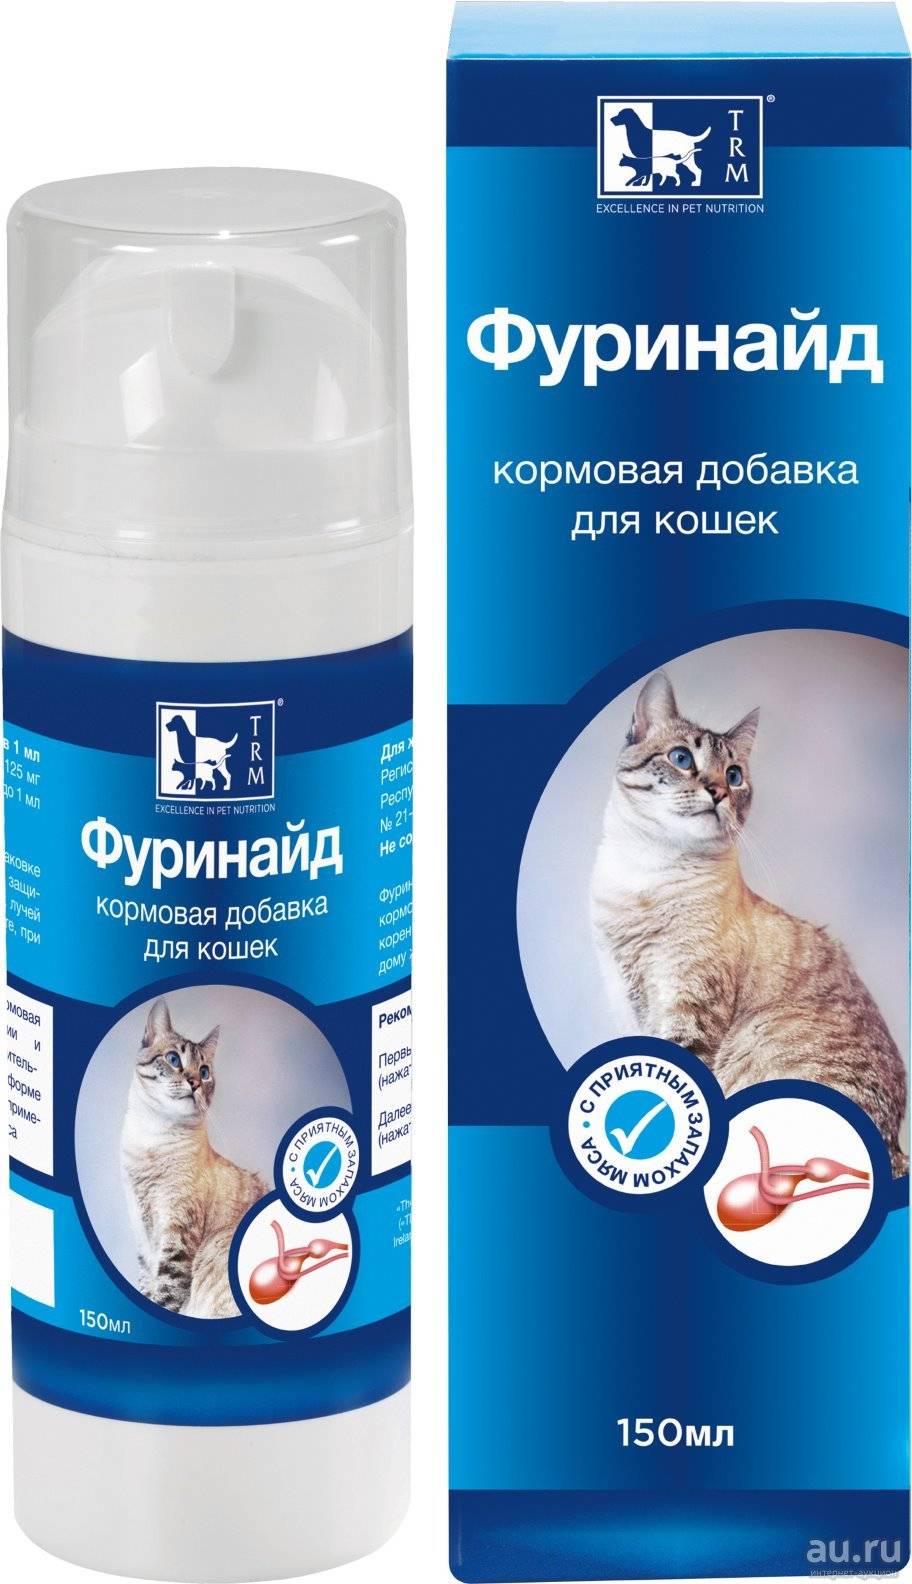 Фуринайд для кошек: инструкция по применению, состав, дозировка и цена | kotodom.ru